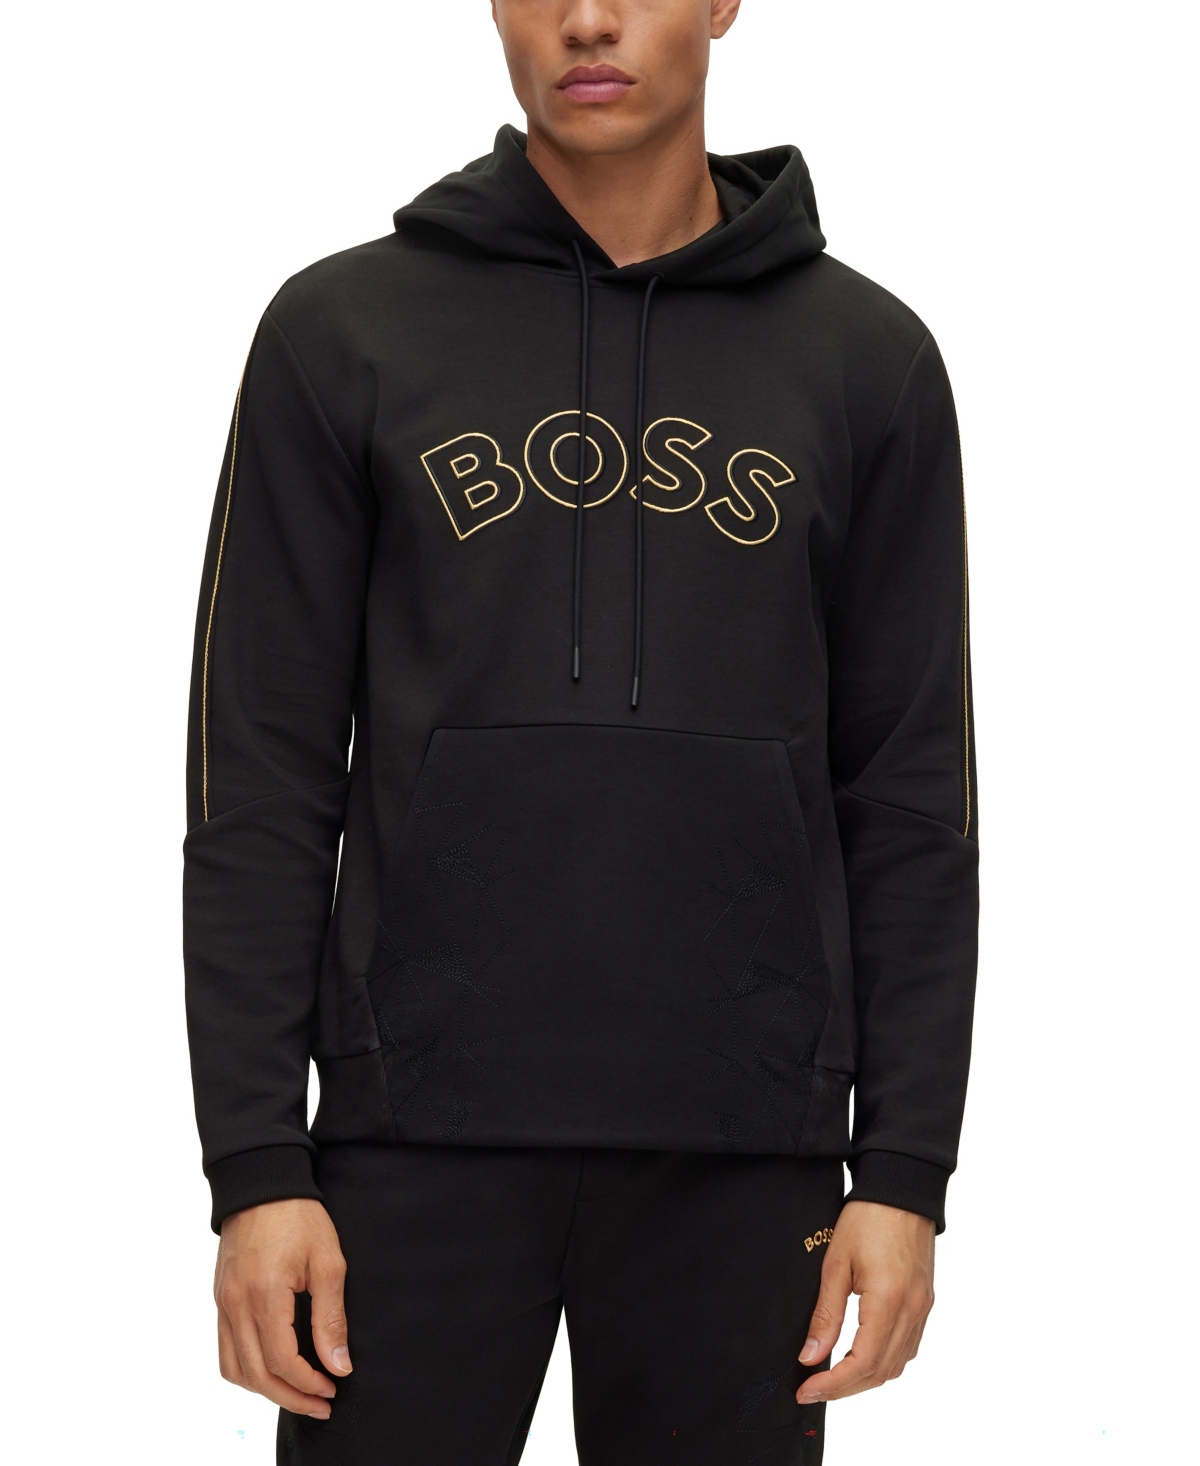 Boss by Hugo Boss Men's Regular-Fit Hoodie Sweatshirt - Black